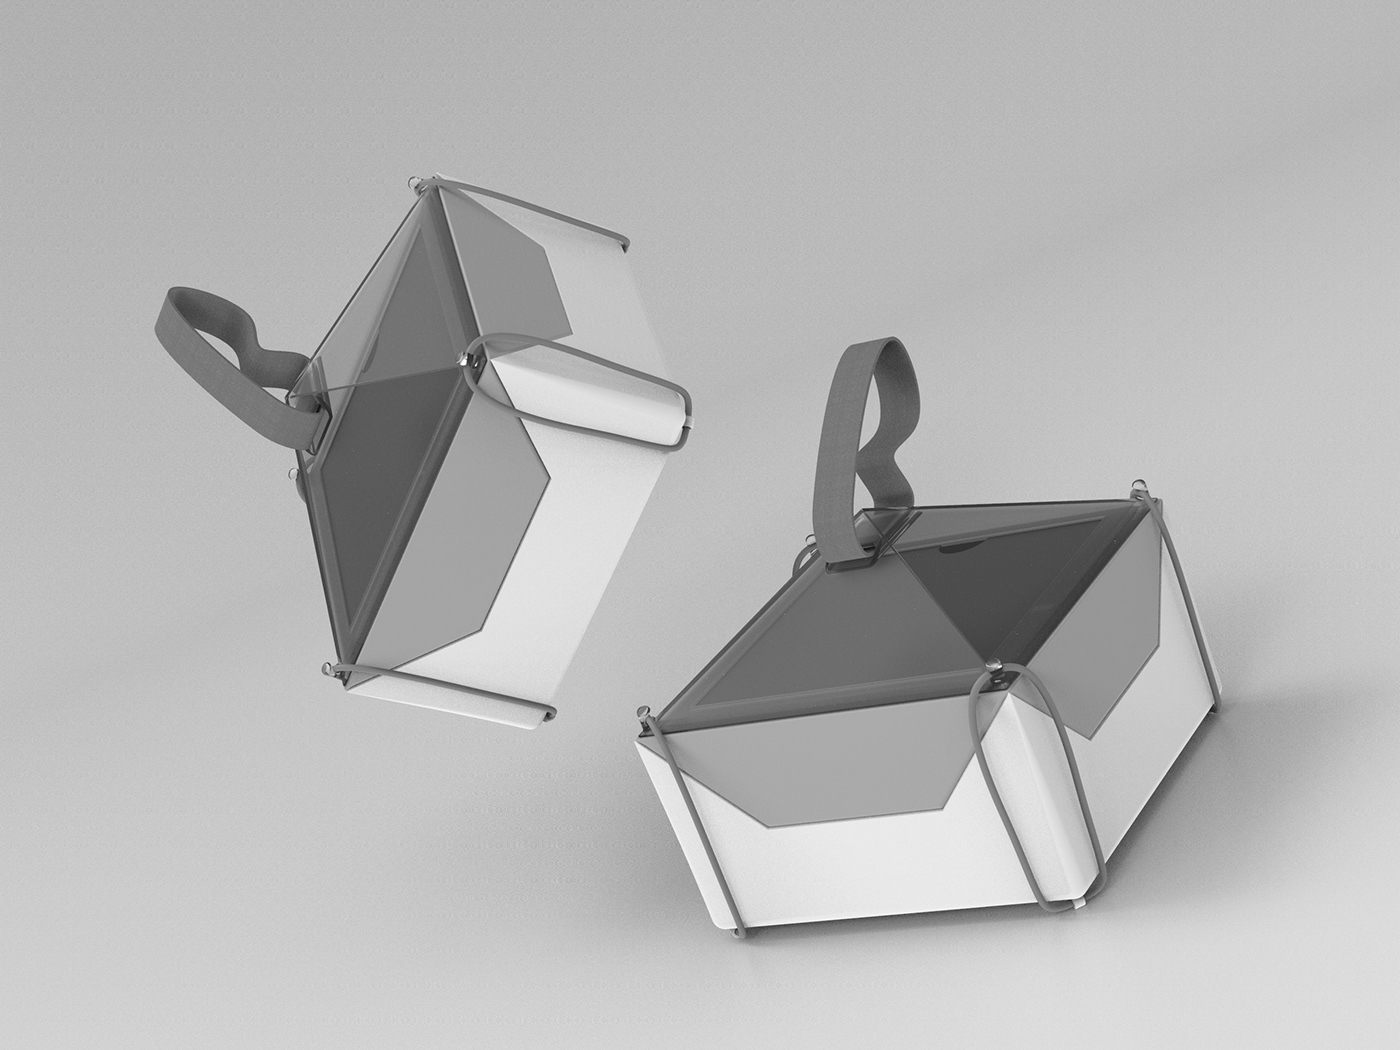 3D model design industrial industrial design  keyshot Lunch box Maya product design  Render soliworks